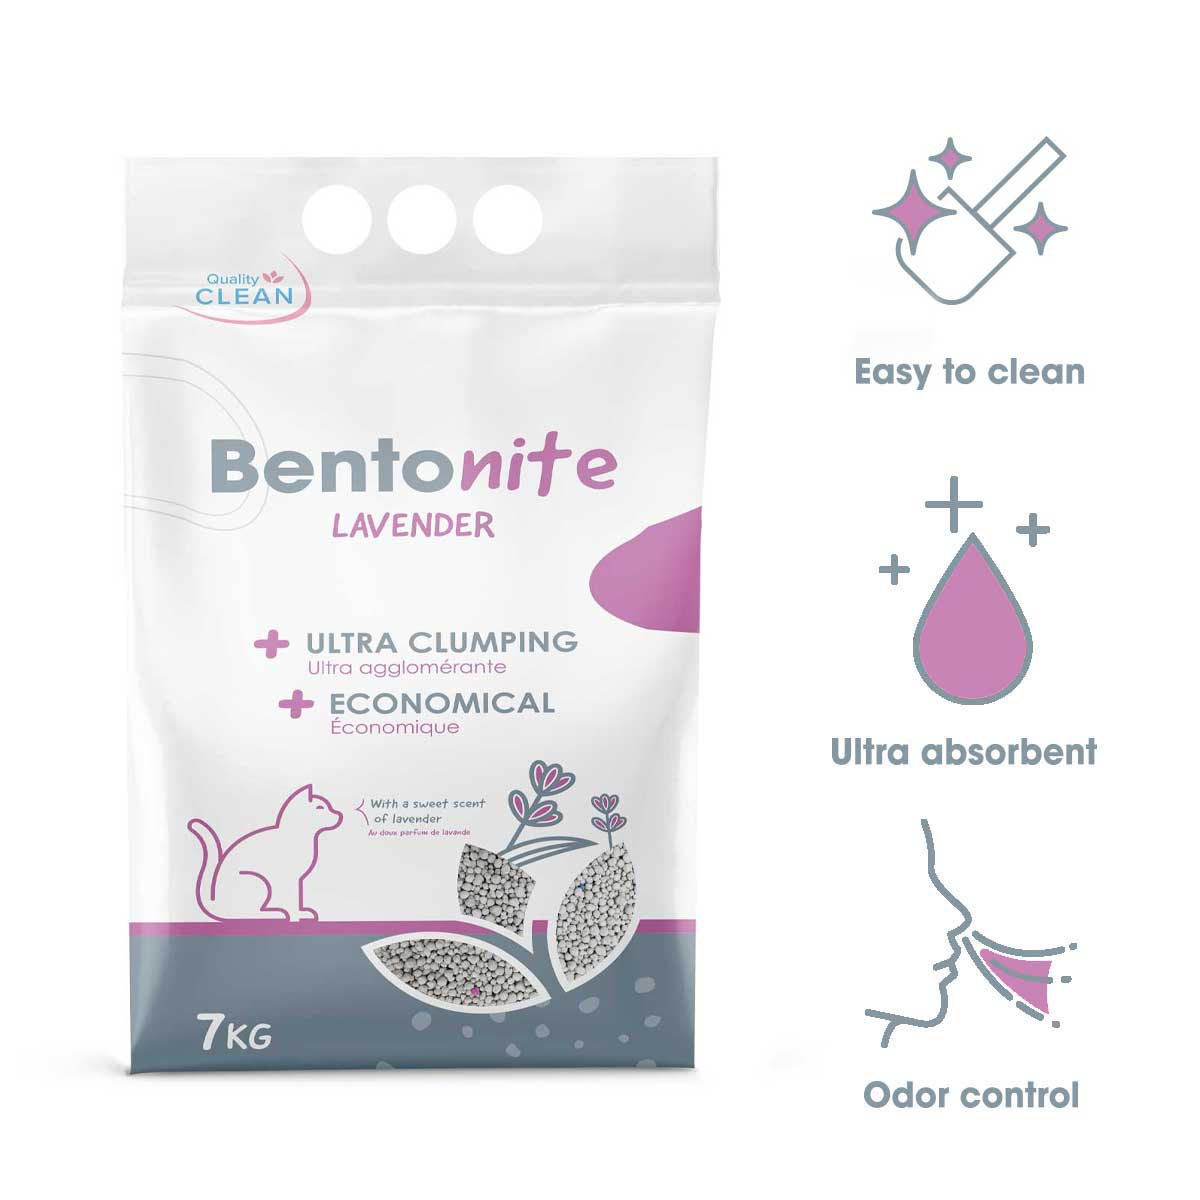 Bentonit-Lavendel-Mineral-Katzenstreu ultraklumpend